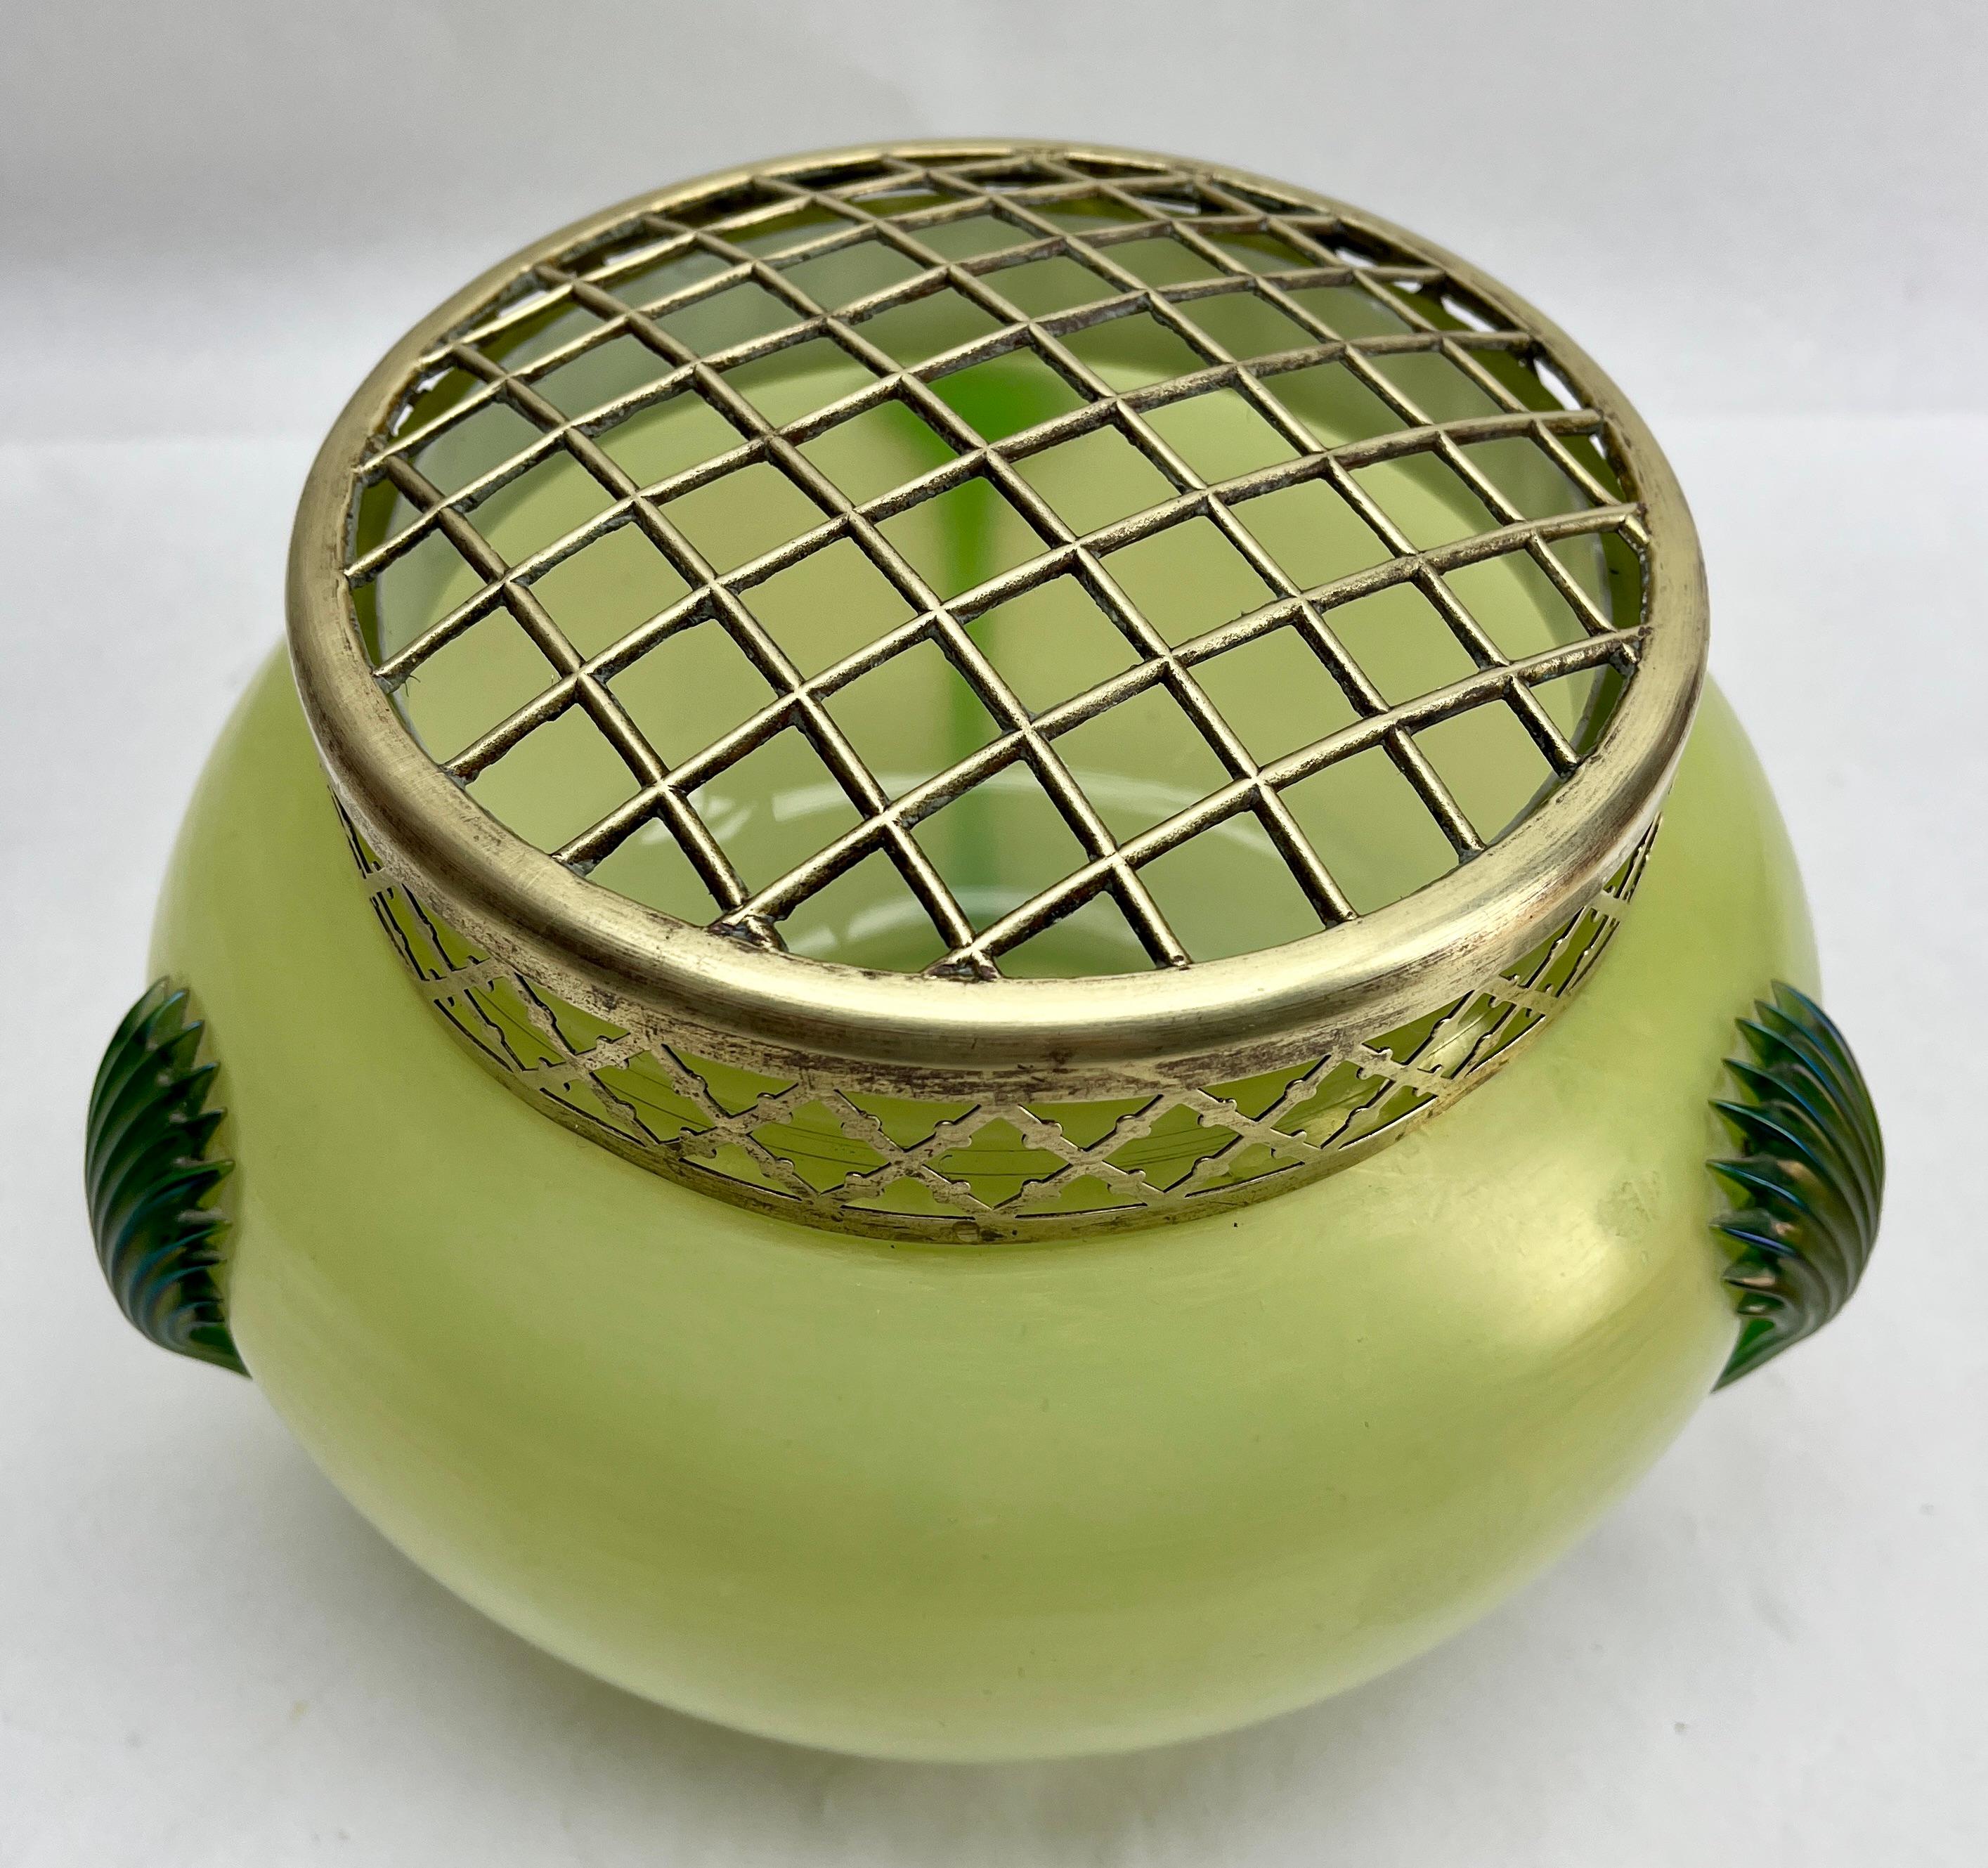 Jugendstil Große Vase aus grün irisierendem Glas Pique Fleurs' von Loetz' mit Gitter

Subtile, mundgeblasene Glasvase im Stil des Art déco. Diese Vasenform wird oft als 